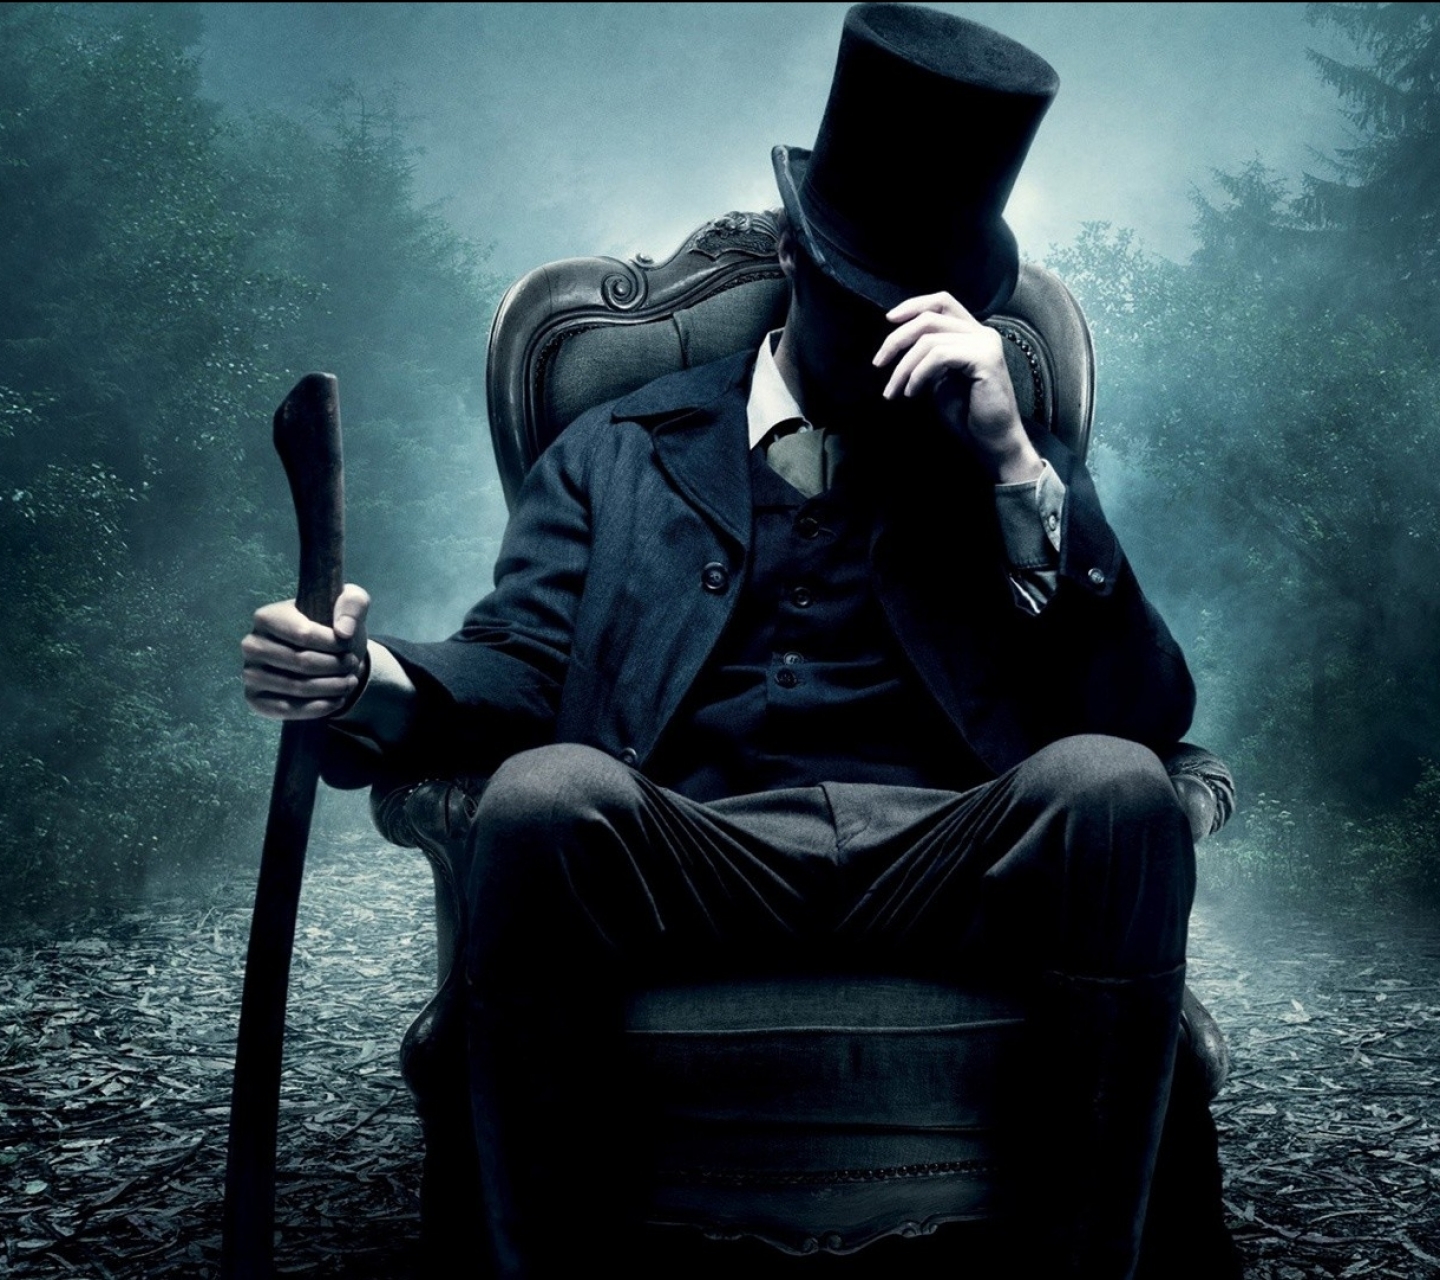 Descarga gratuita de fondo de pantalla para móvil de Películas, Abraham Lincoln: Cazador De Vampiros.